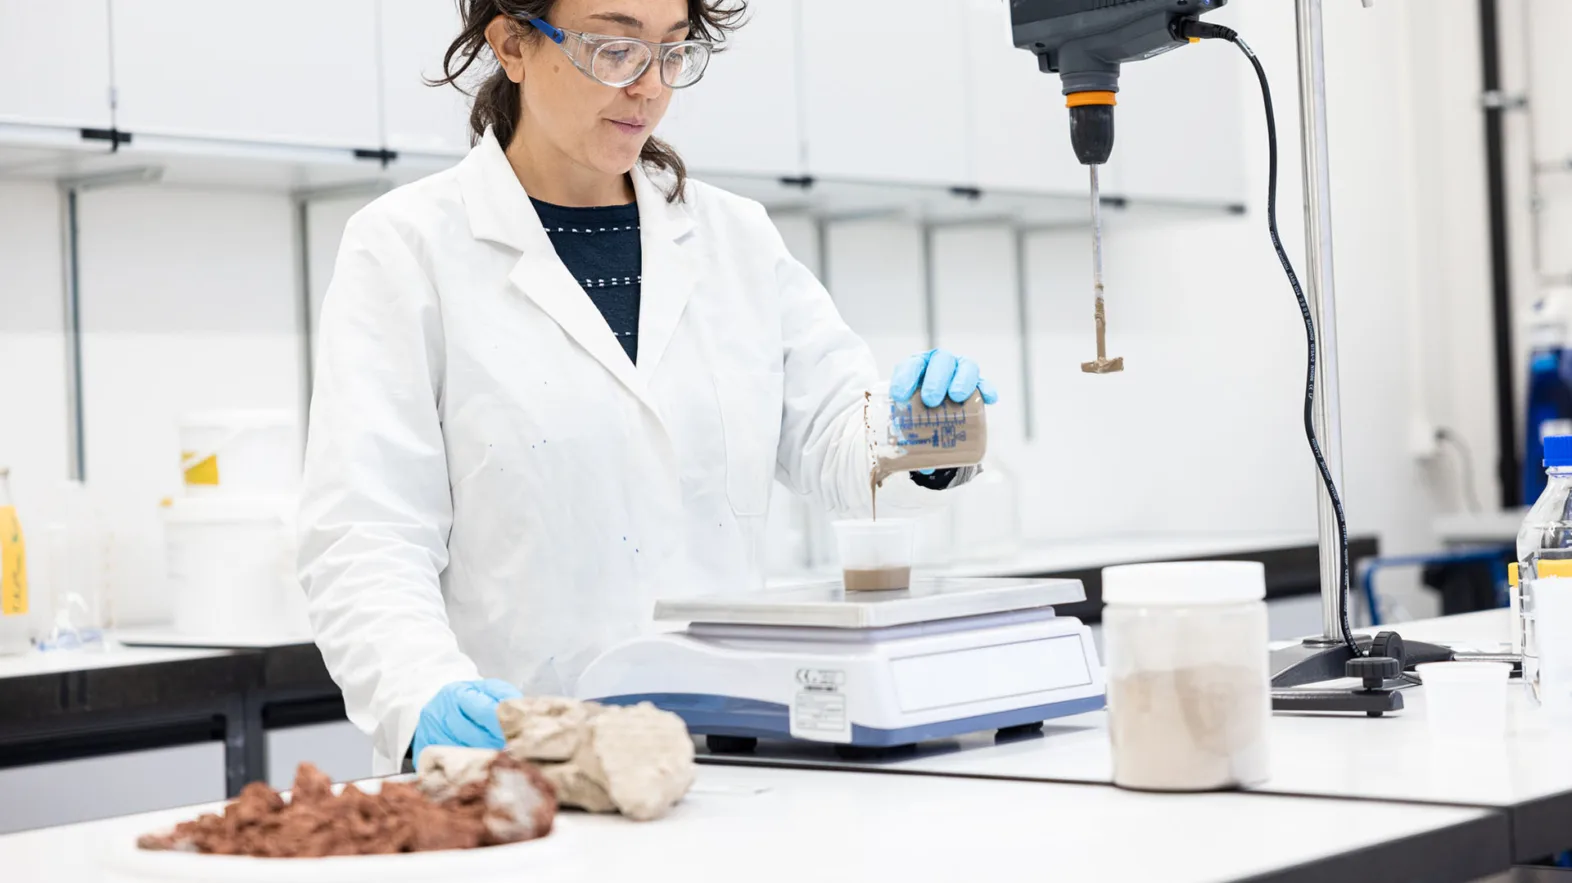 Eine Frau in weissem Kittel mit Schutzbrille und Handschuhen arbeitet in einem Labor.